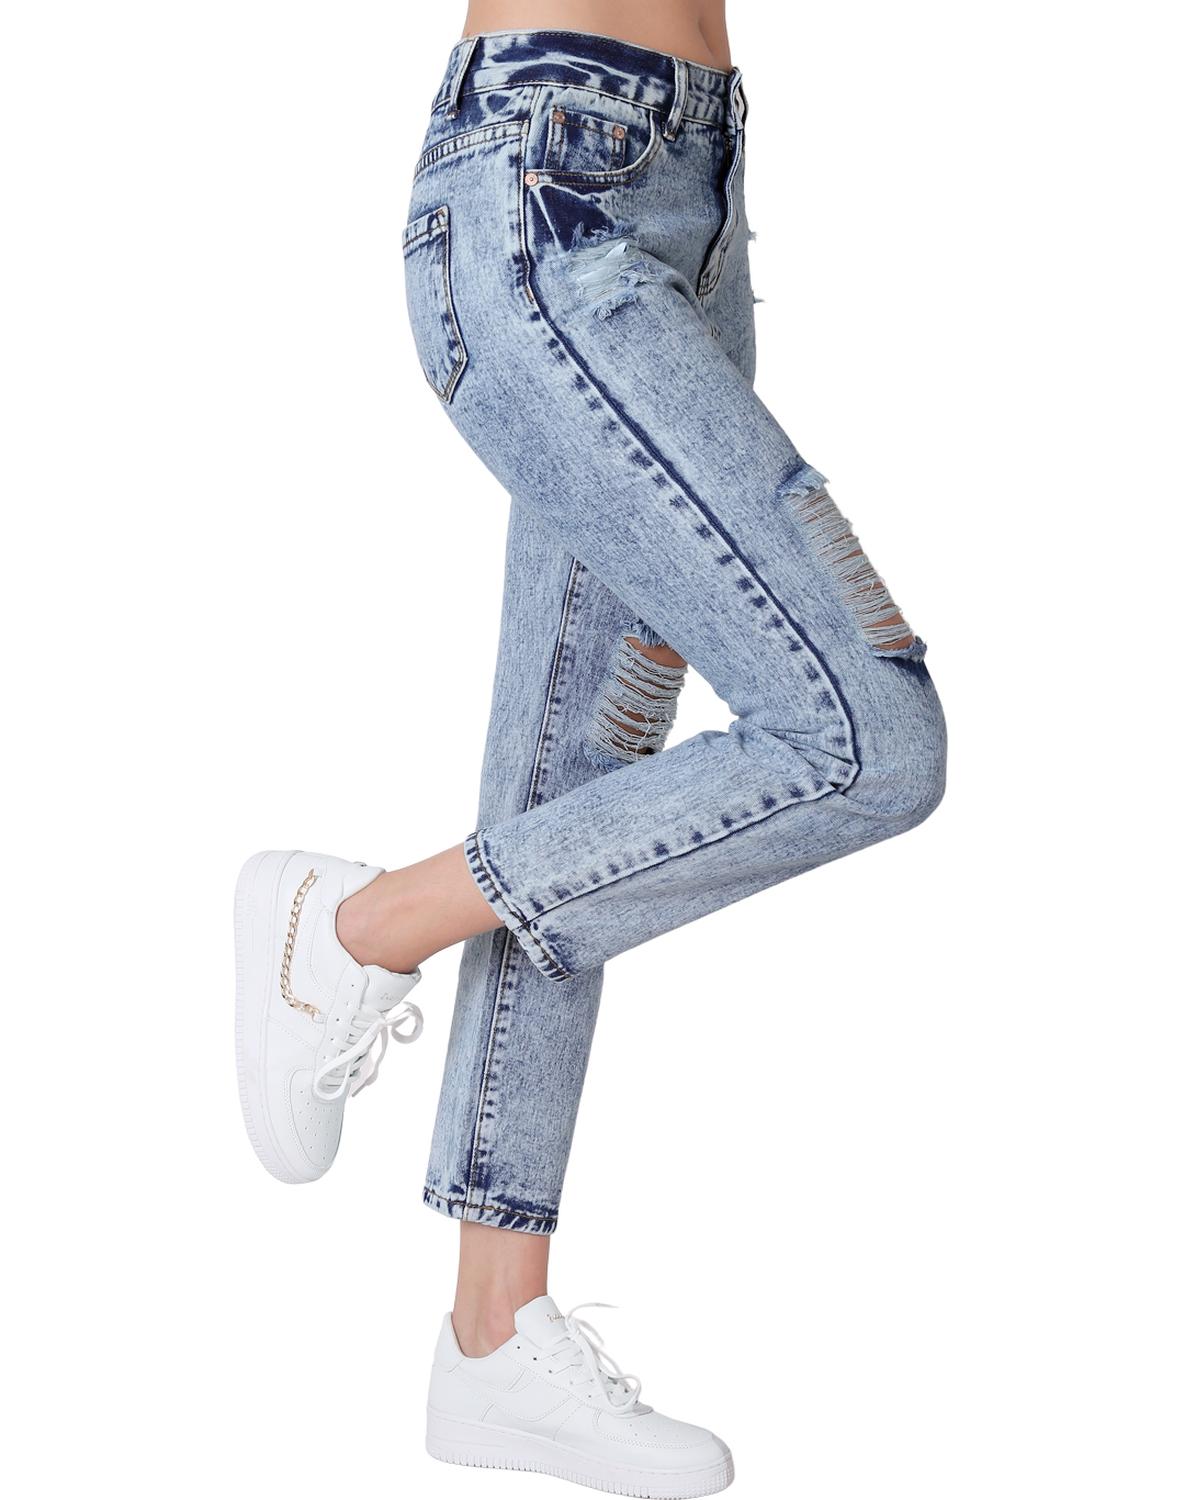 Jeans Moda Jogger Mujer Azul Capricho 76804800